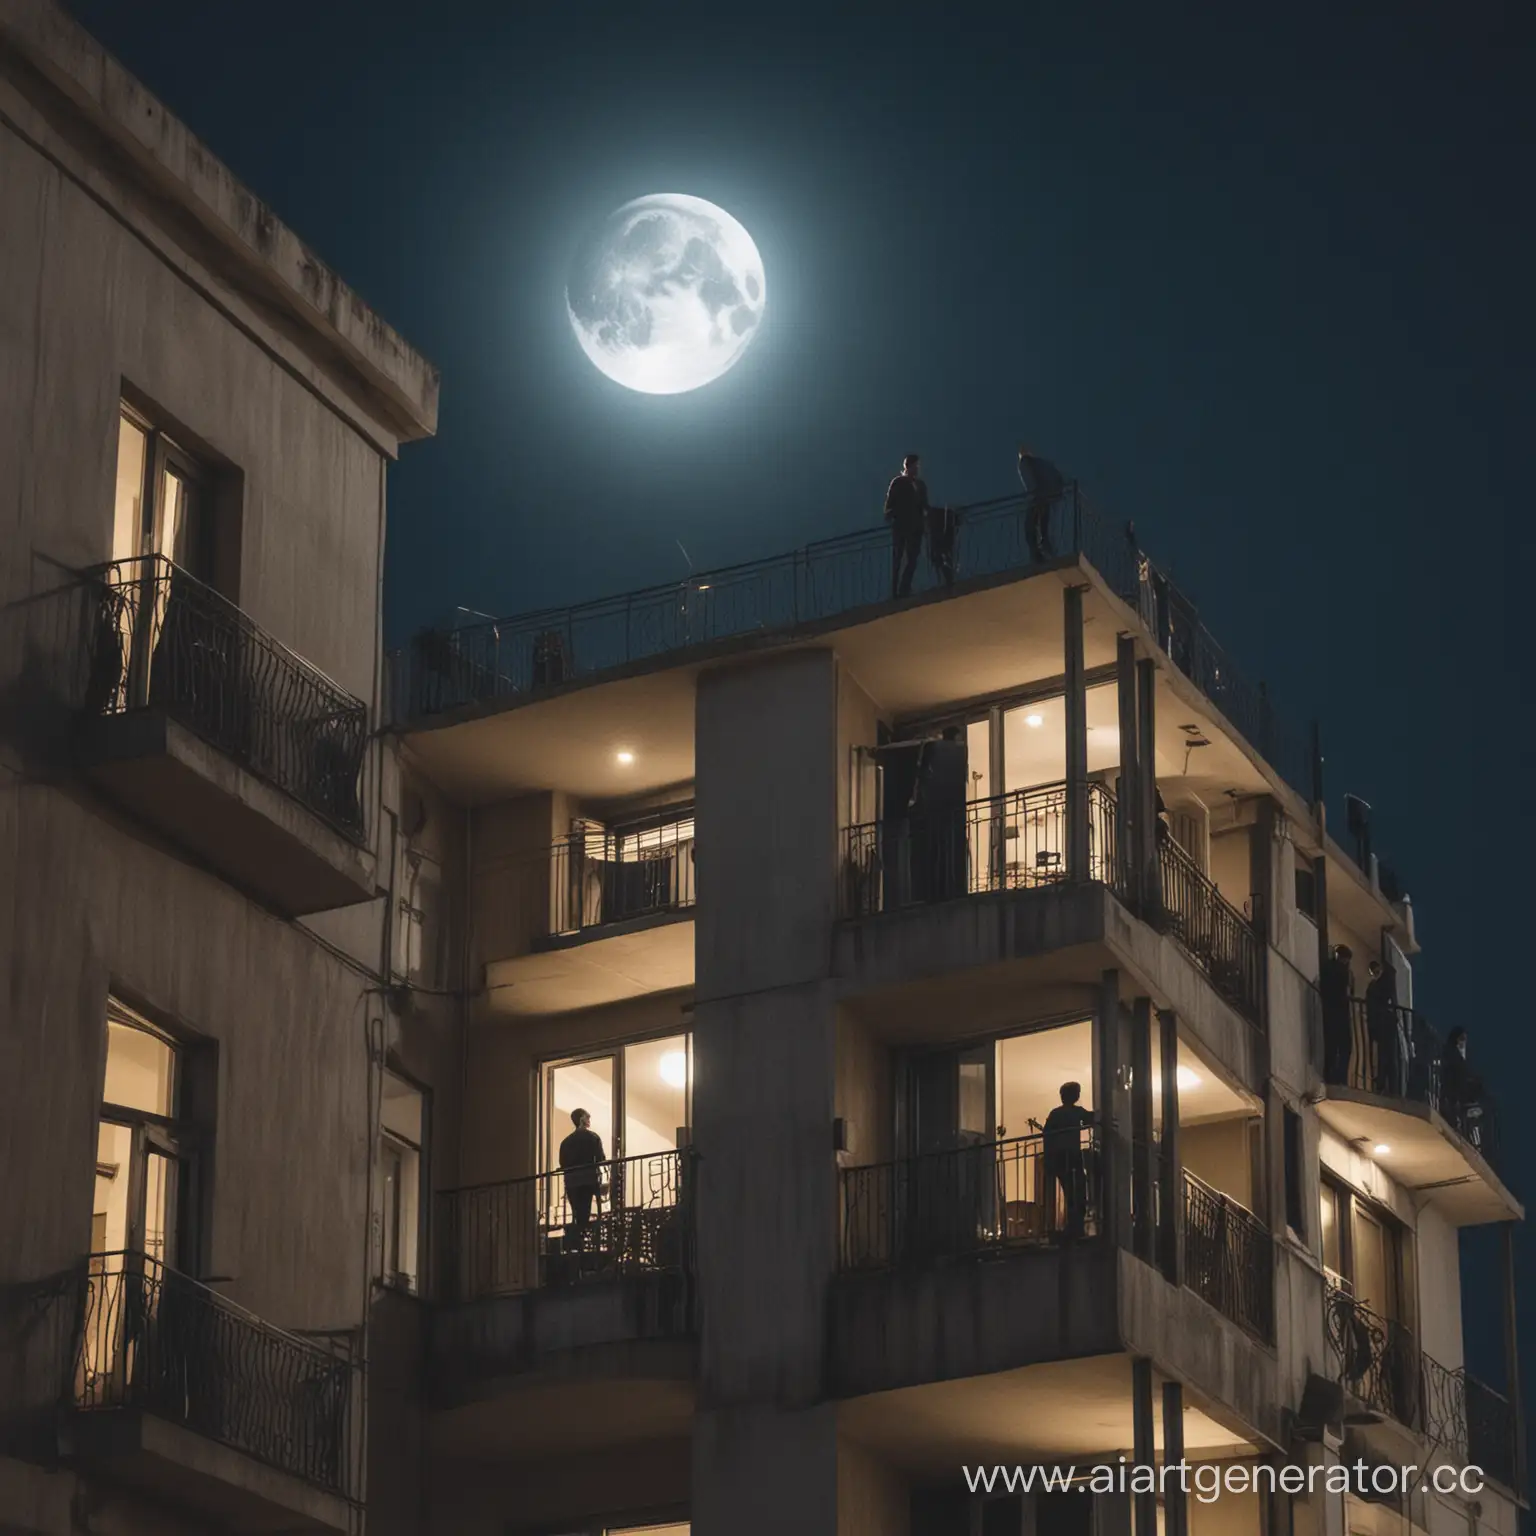 Парень стоит на балконе многоэтажного дома и смотрит на луну.